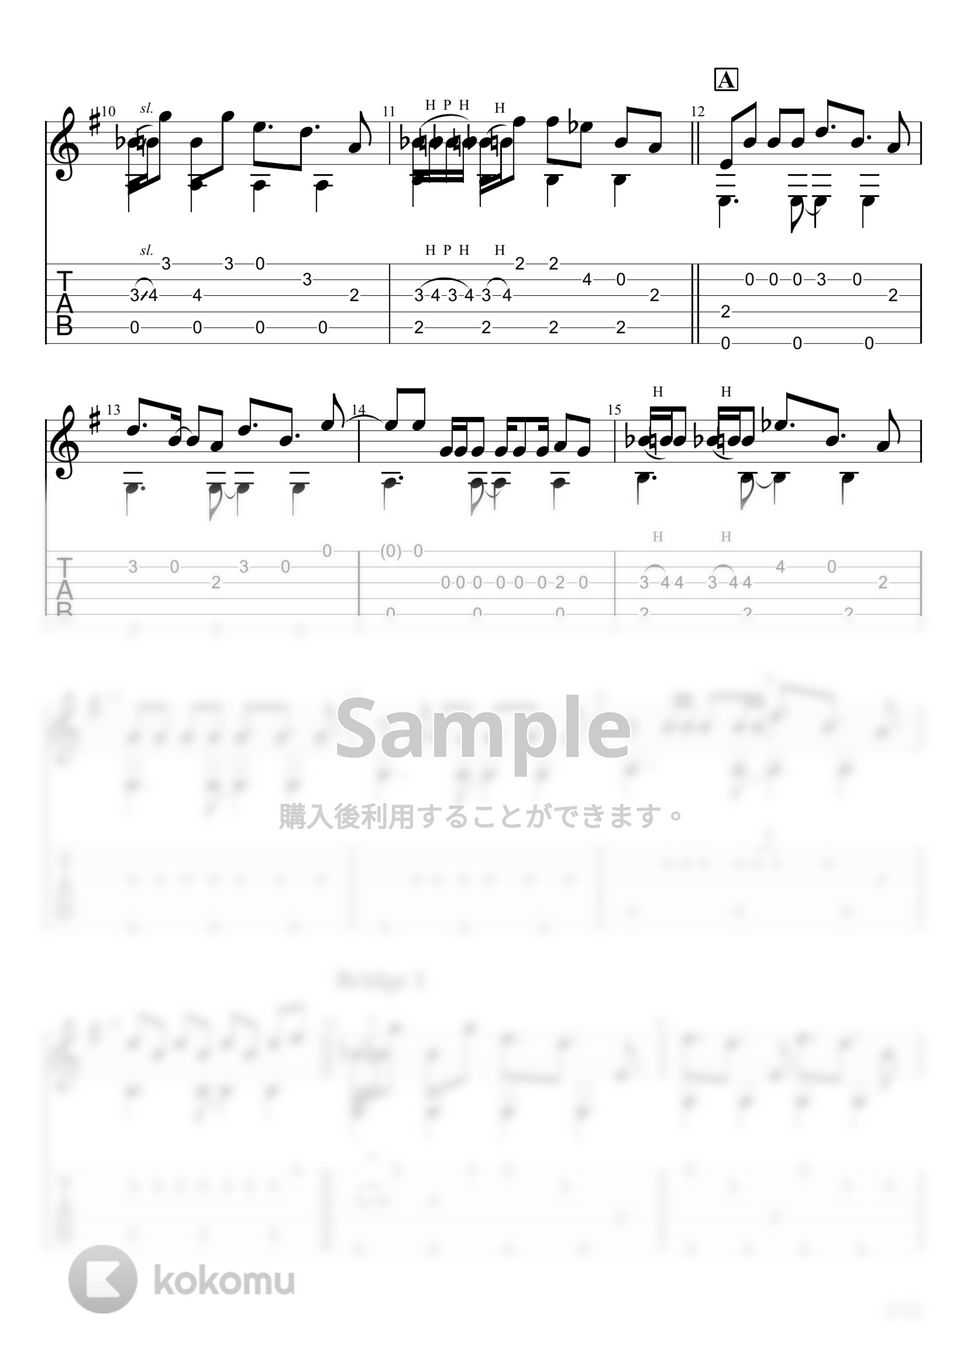 かいりきベア - ダーリンダンス (ソロギター) by u3danchou